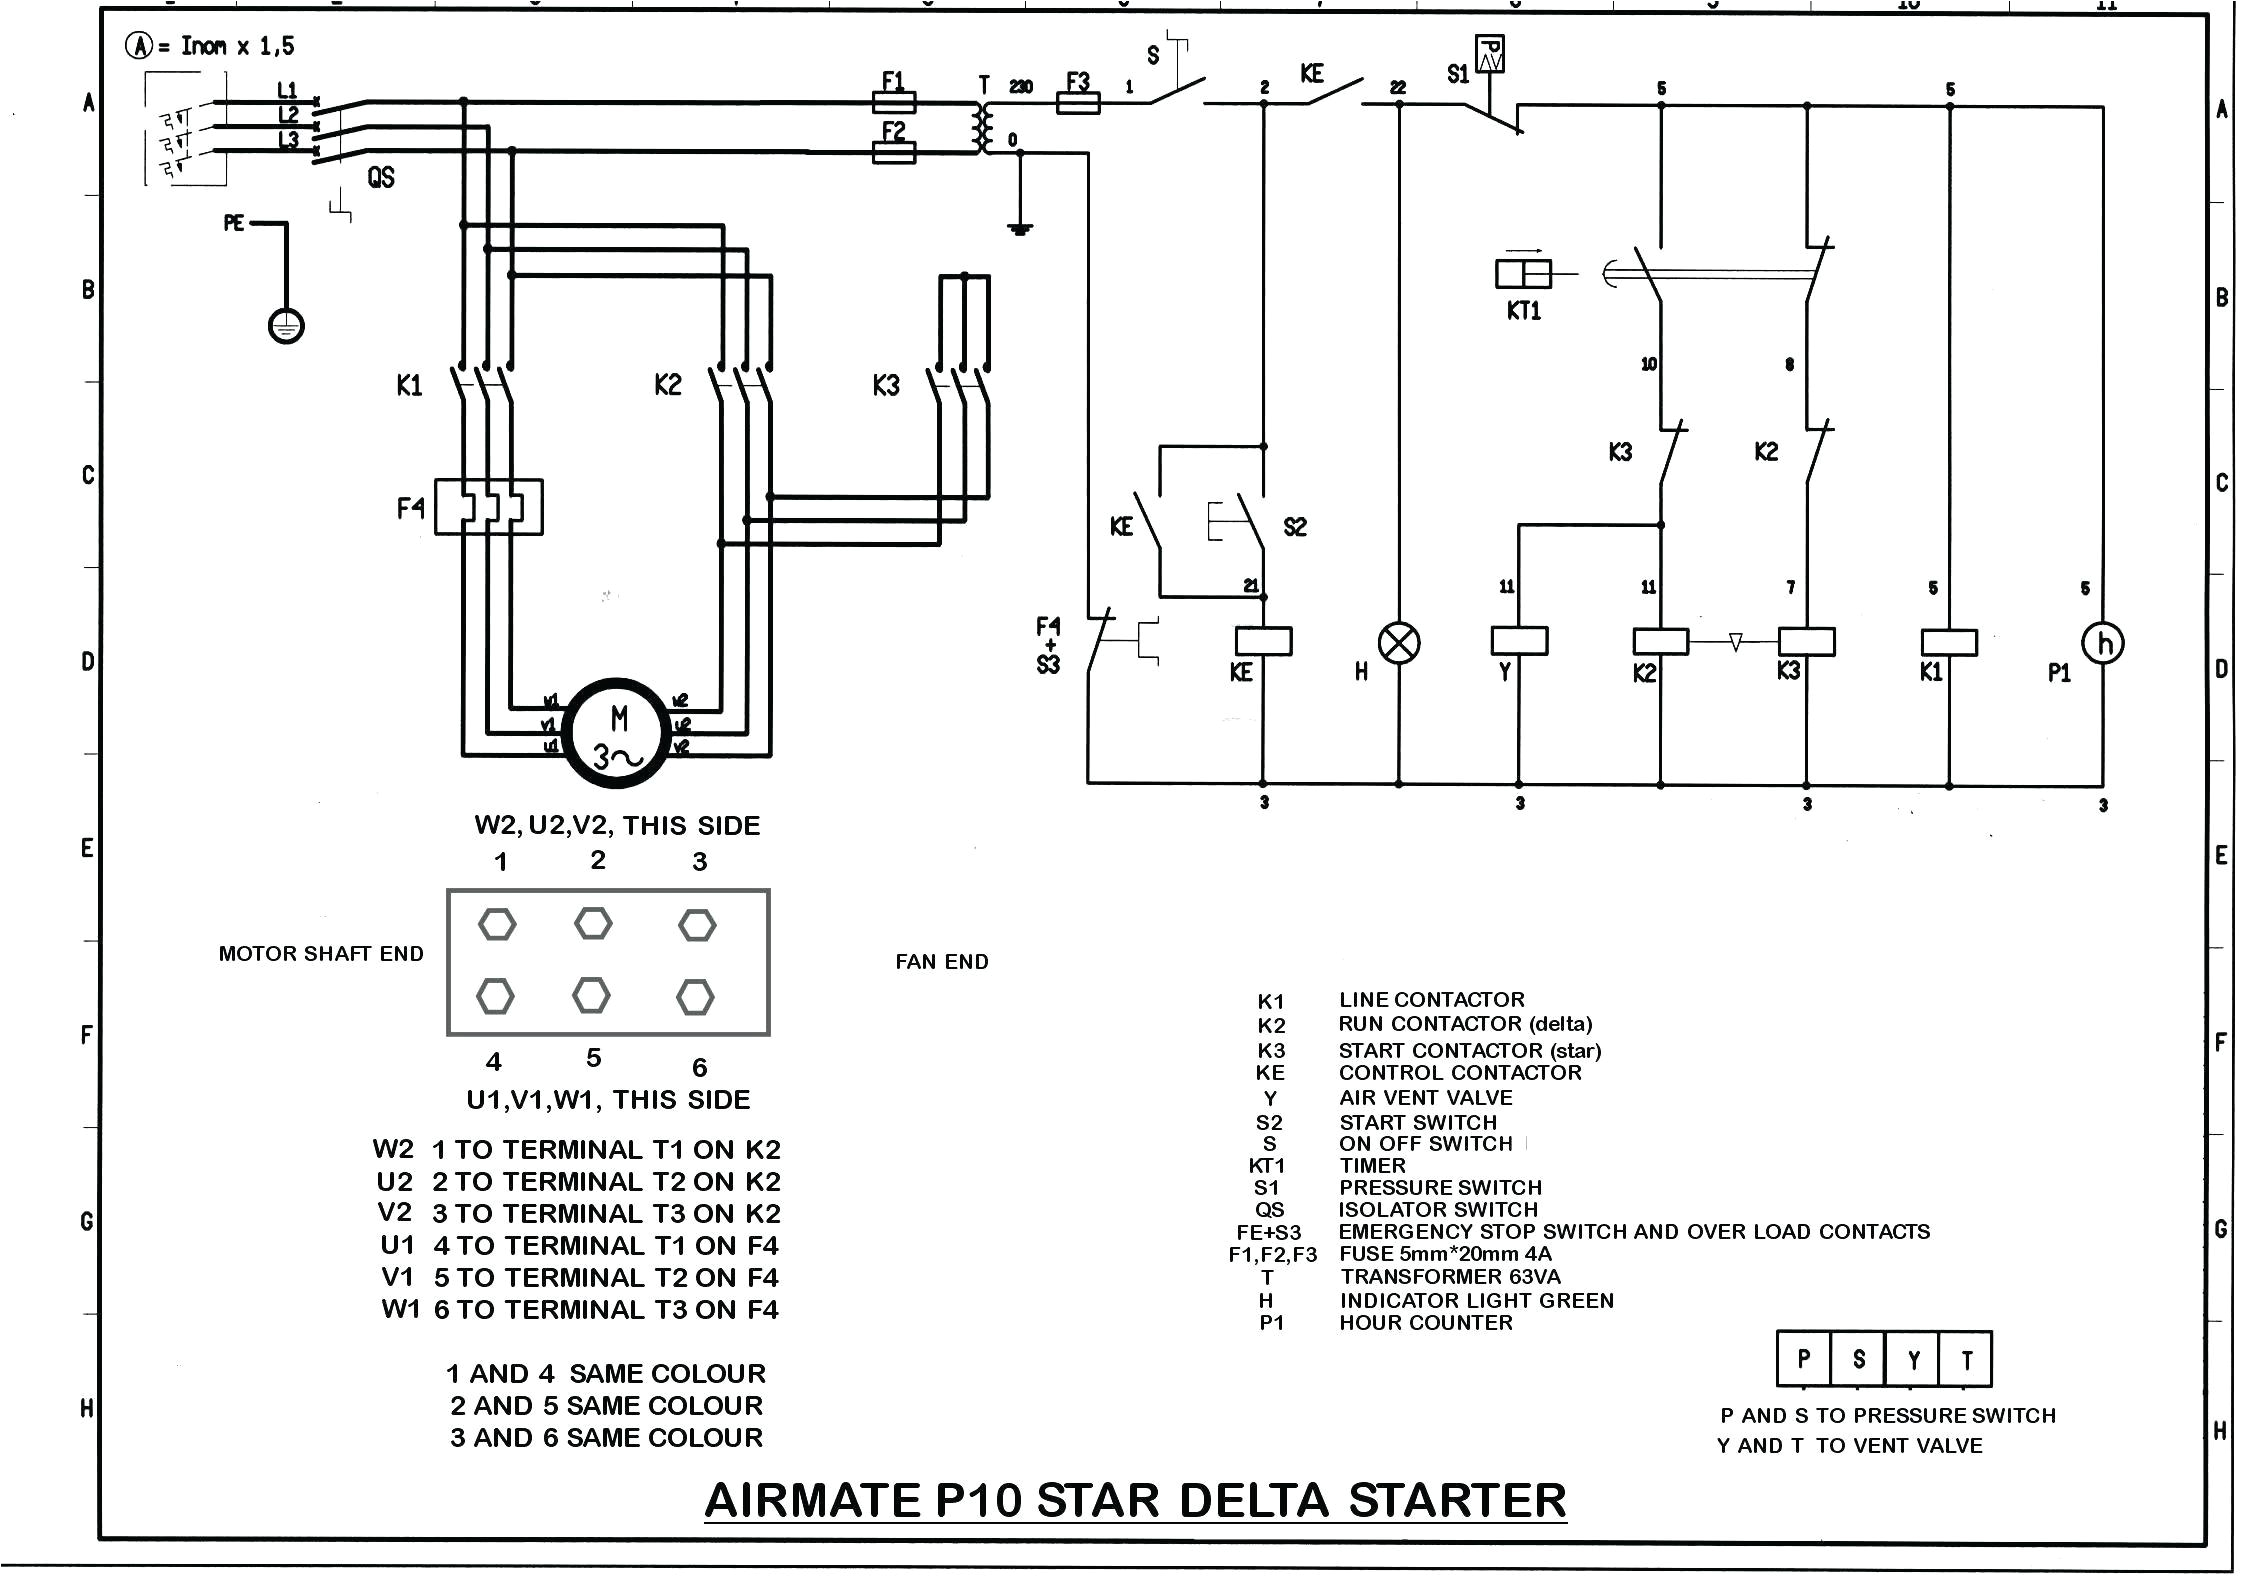 atlas 205 wiring diagram blog wiring diagram atlas 205 wiring diagram